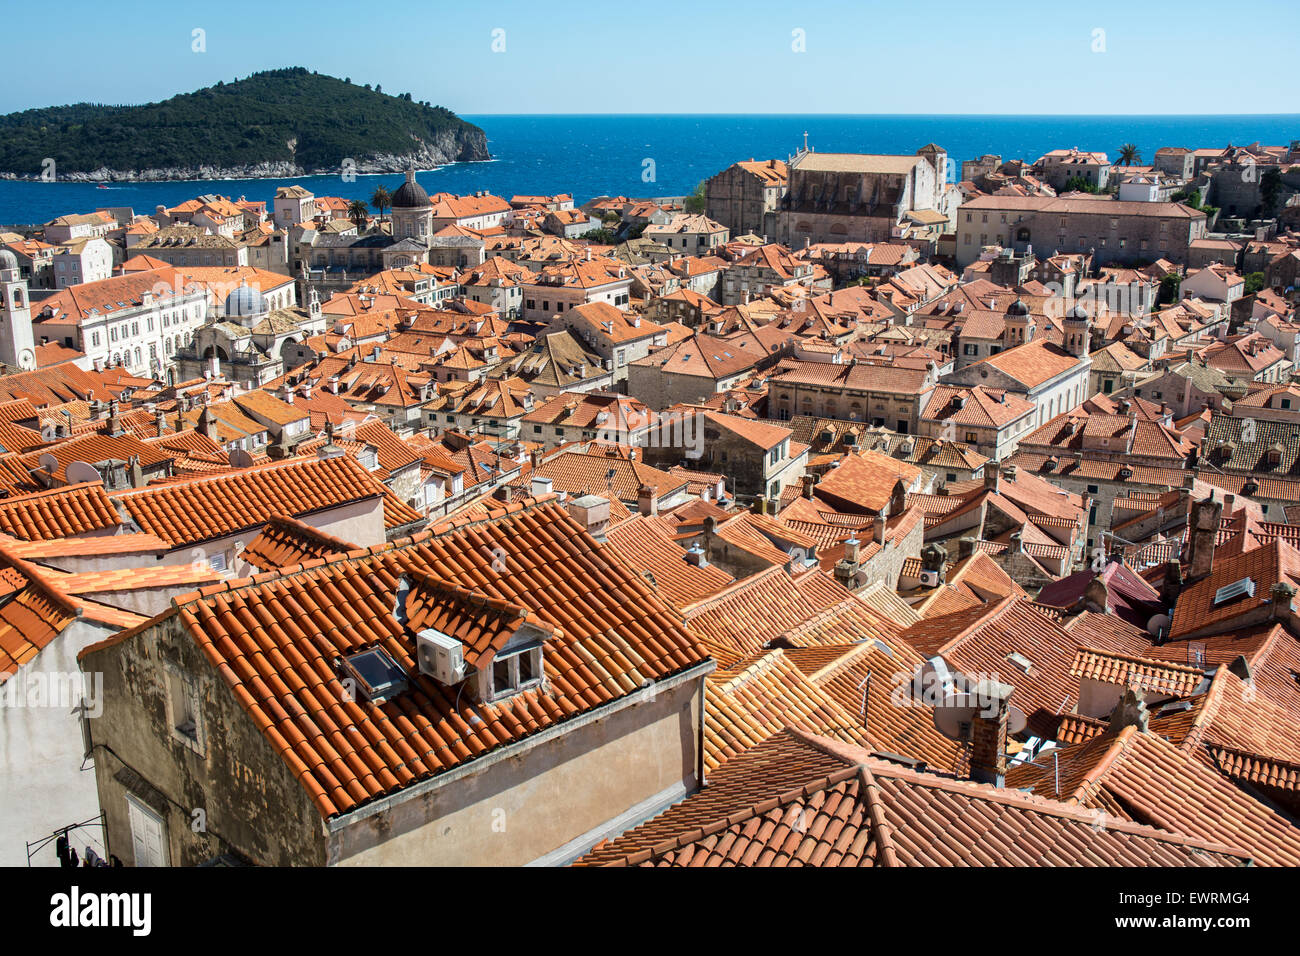 Scène sur le toit de terracota vieille ville avec l'île de Lokrum en arrière-plan, Dubrovnik, Croatie Banque D'Images